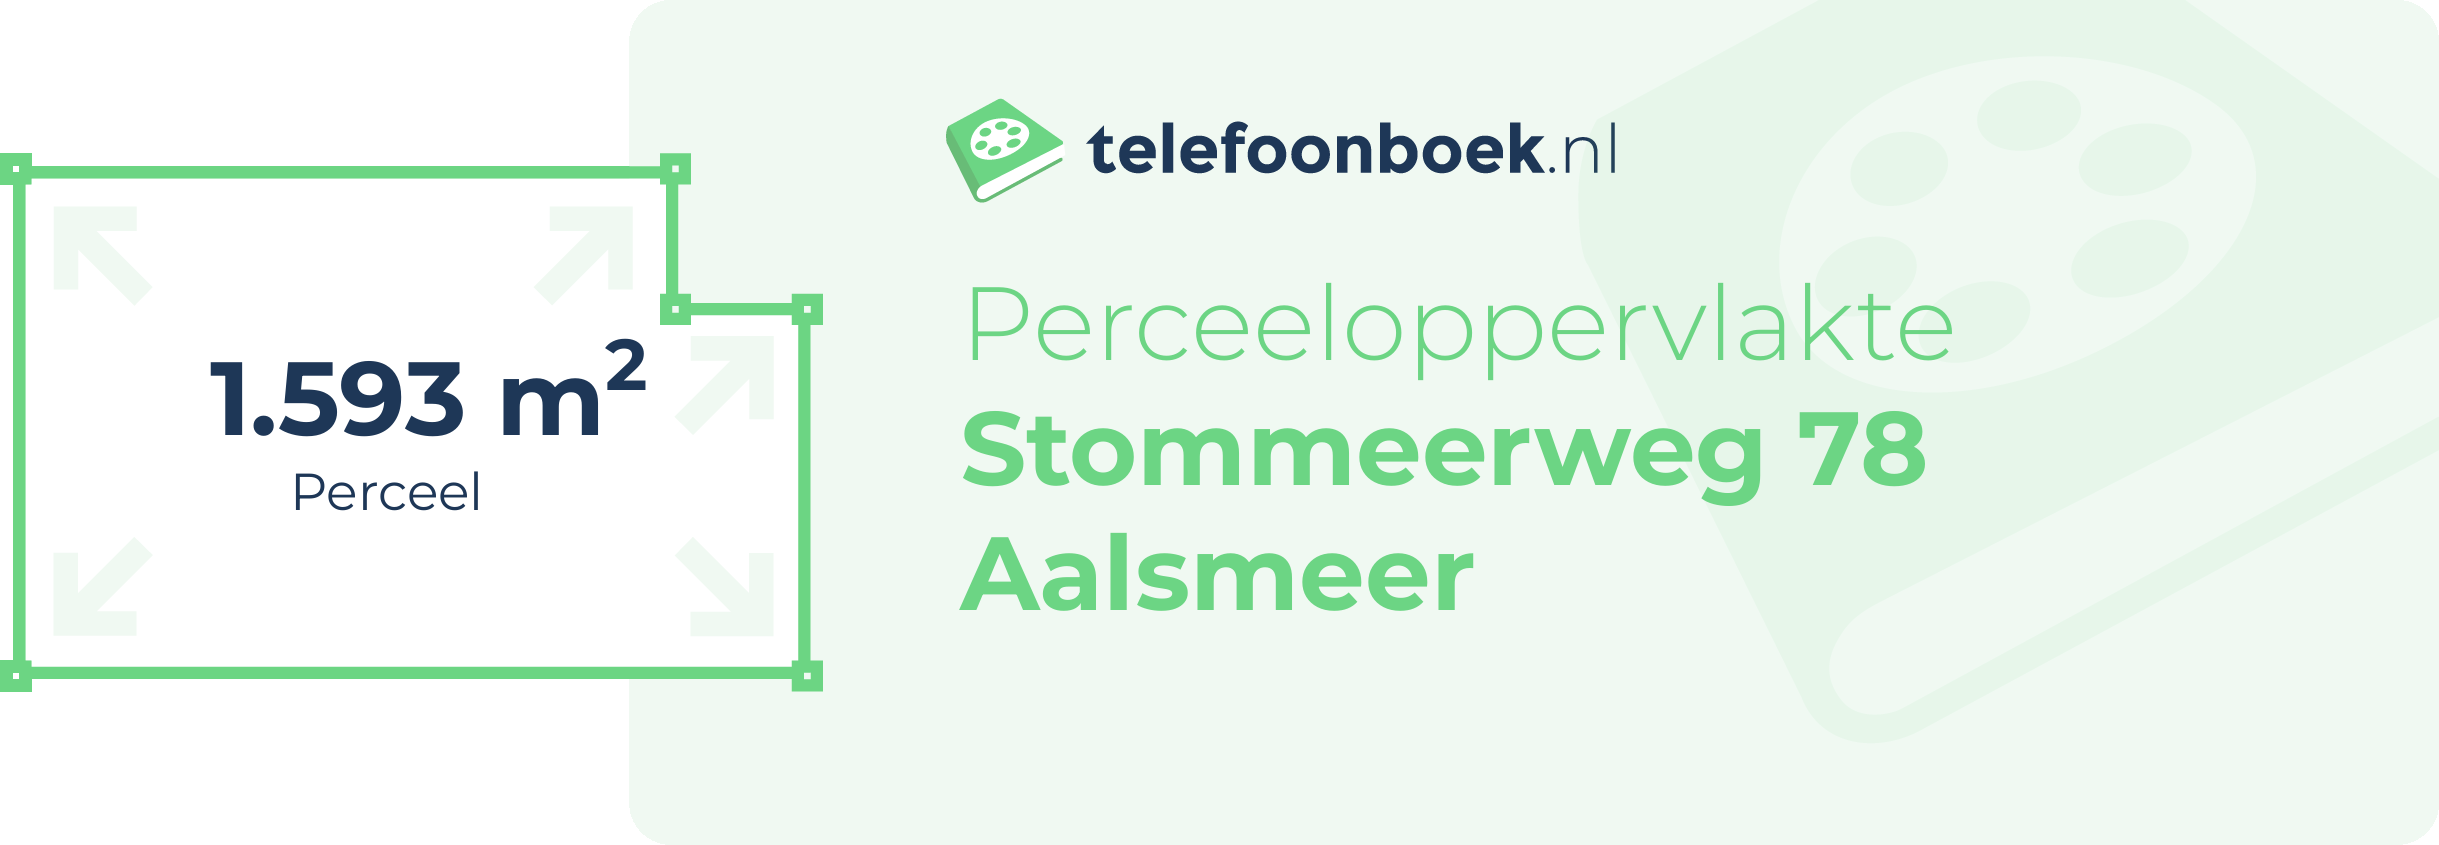 Perceeloppervlakte Stommeerweg 78 Aalsmeer